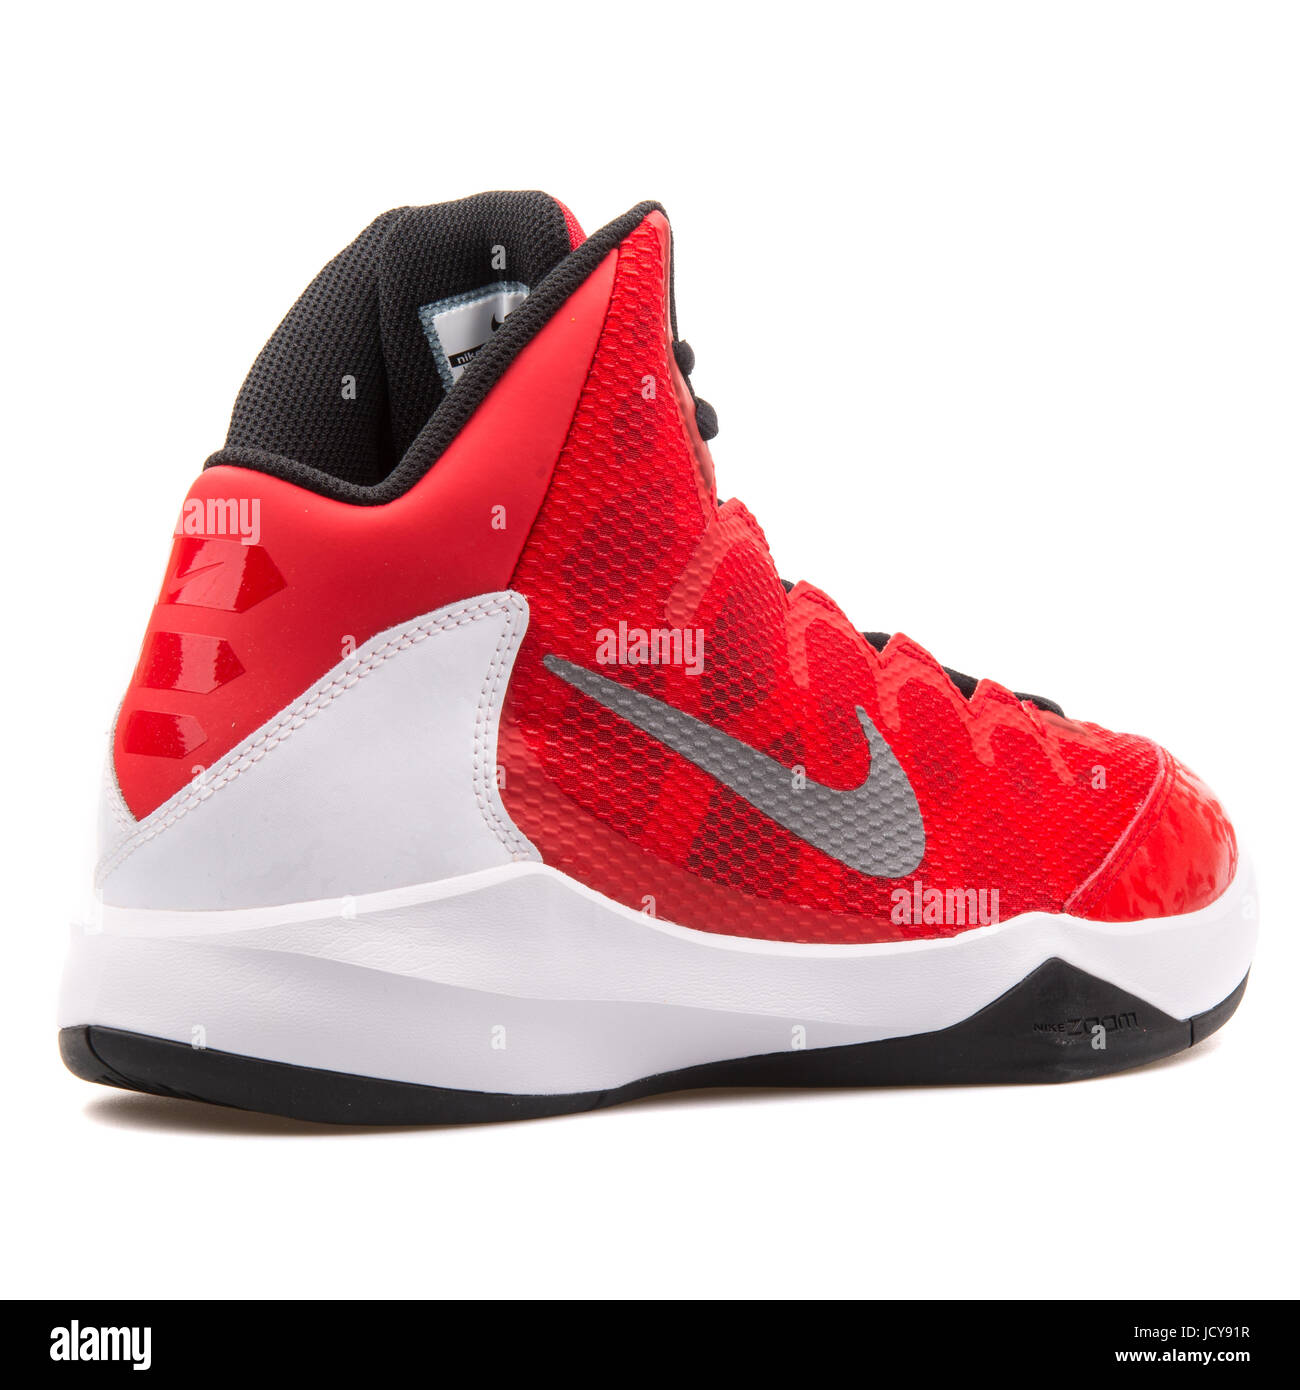 Disponible surf Distribuir Nike Zoom sin duda rojo, blanco y negro zapatillas de baloncesto masculino  - 749432-601 Fotografía de stock - Alamy